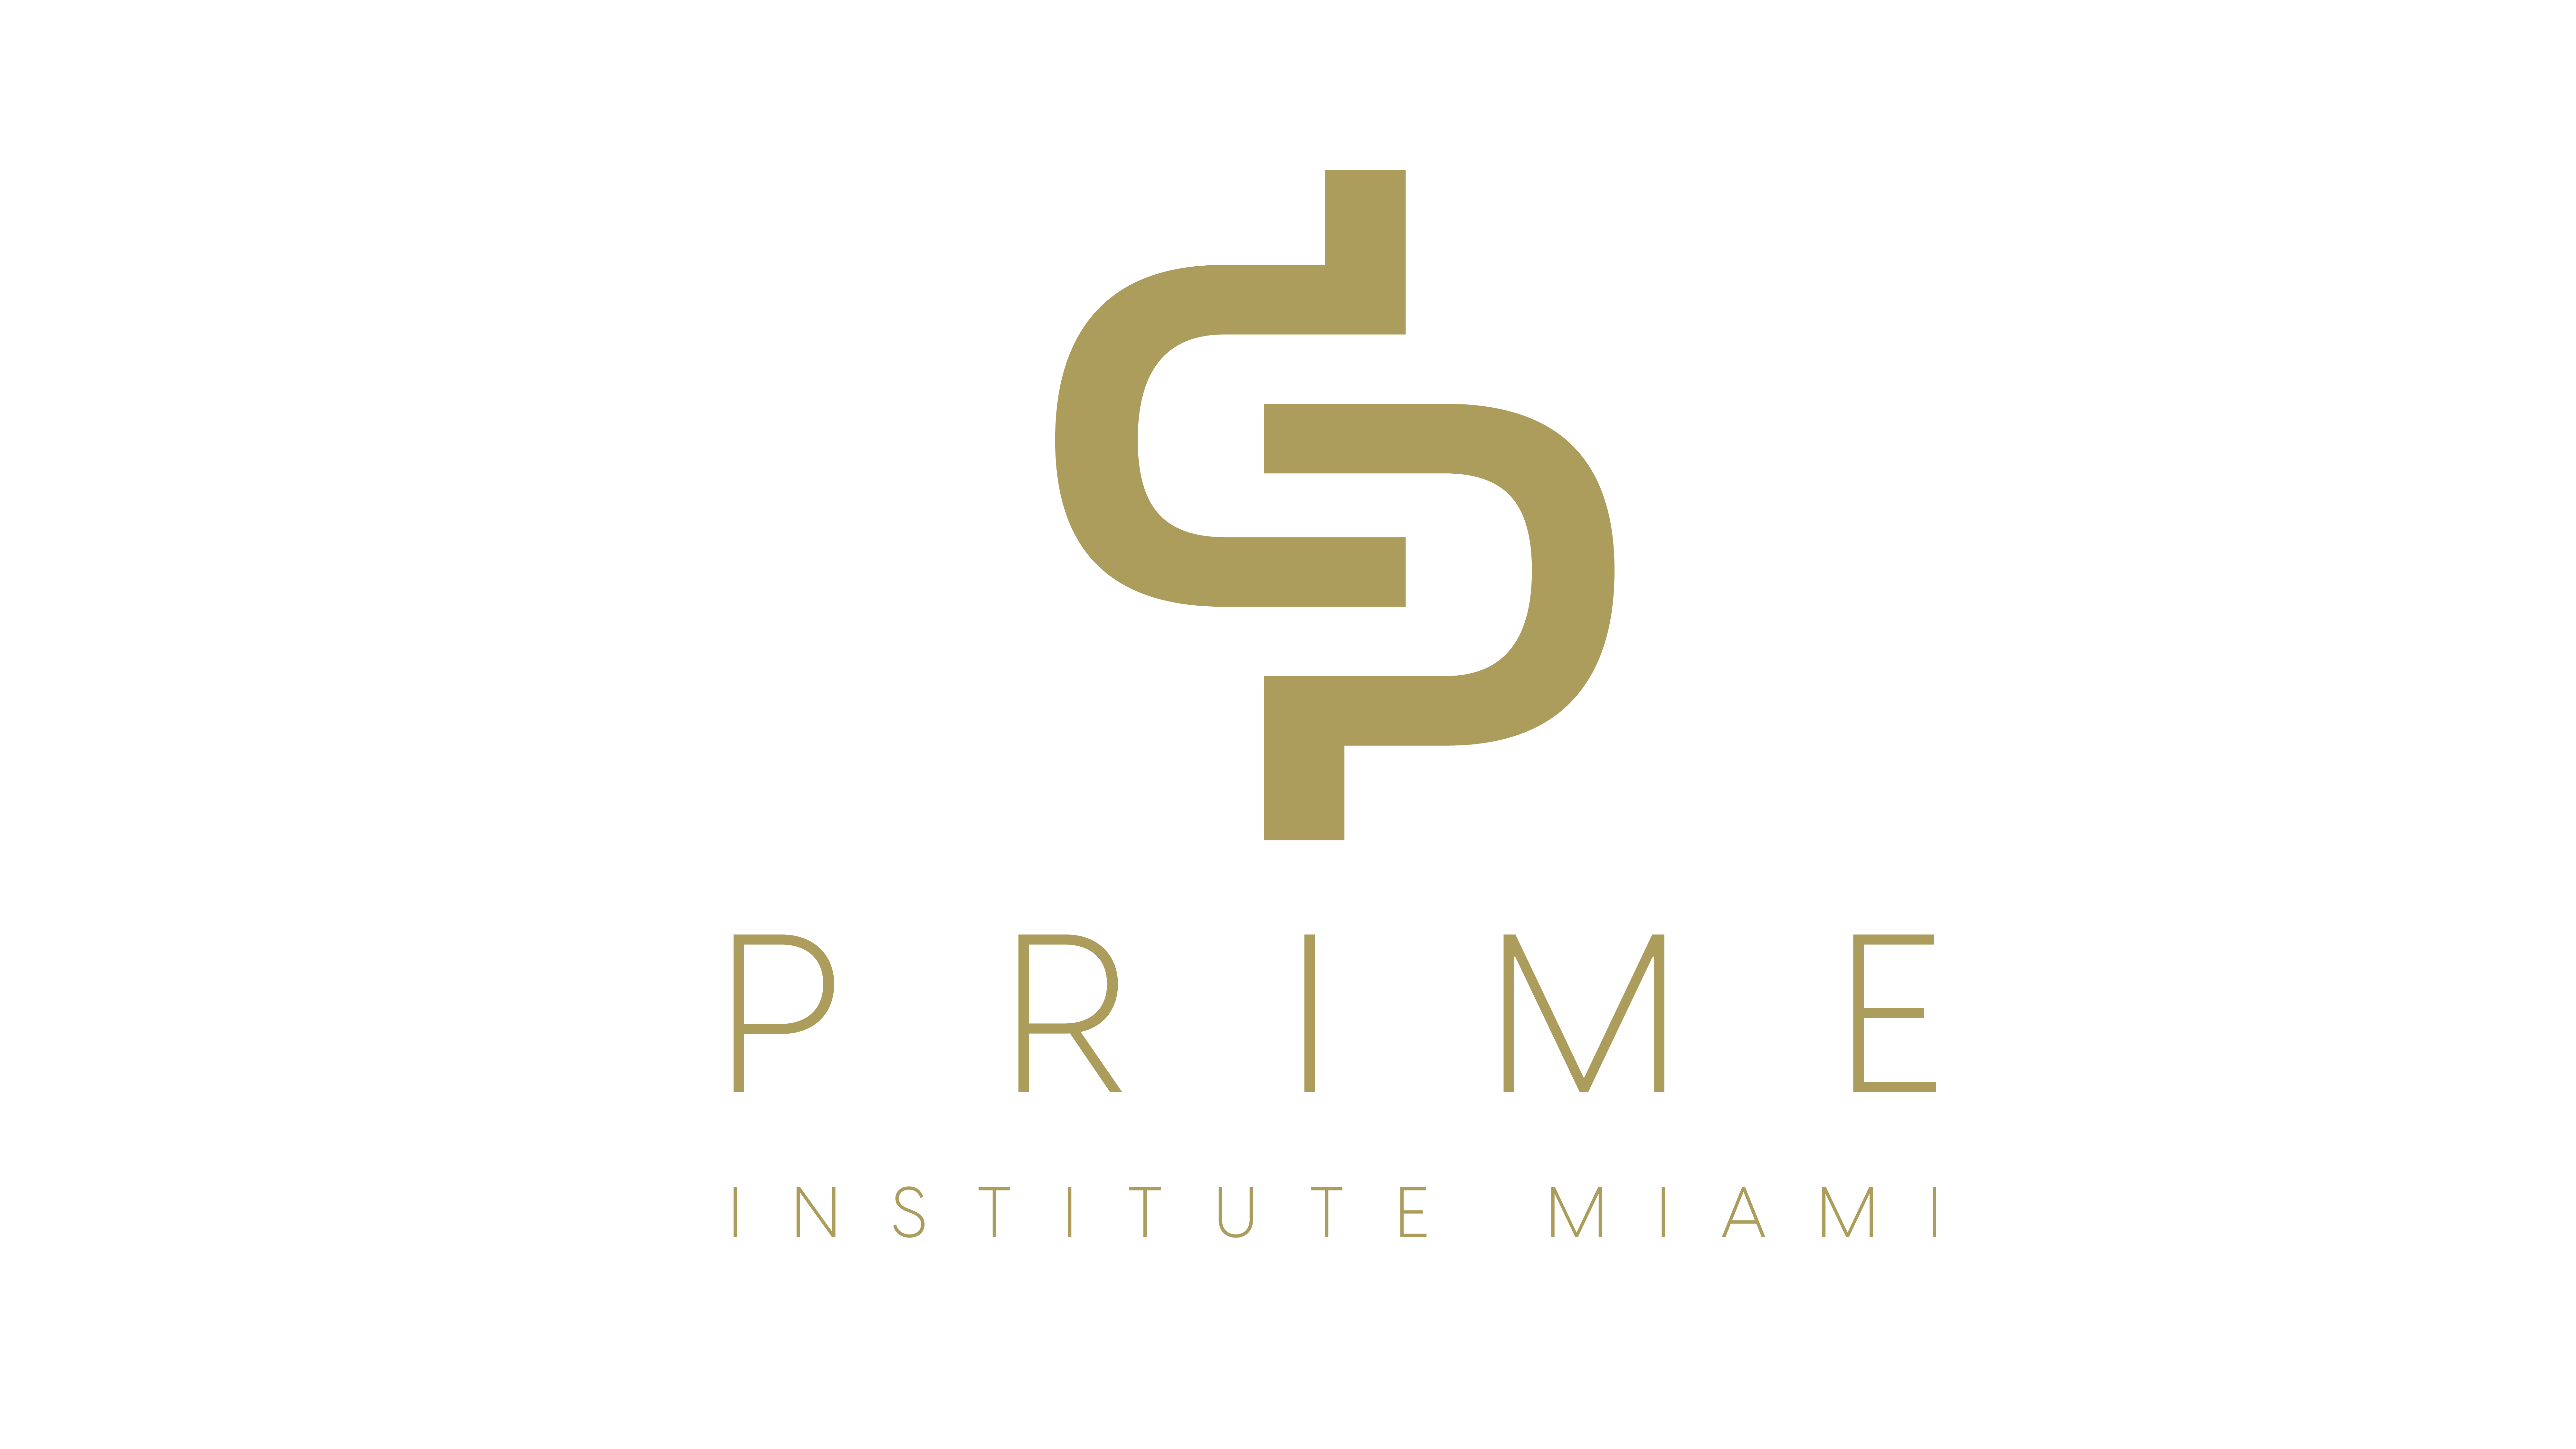 Prime Institute